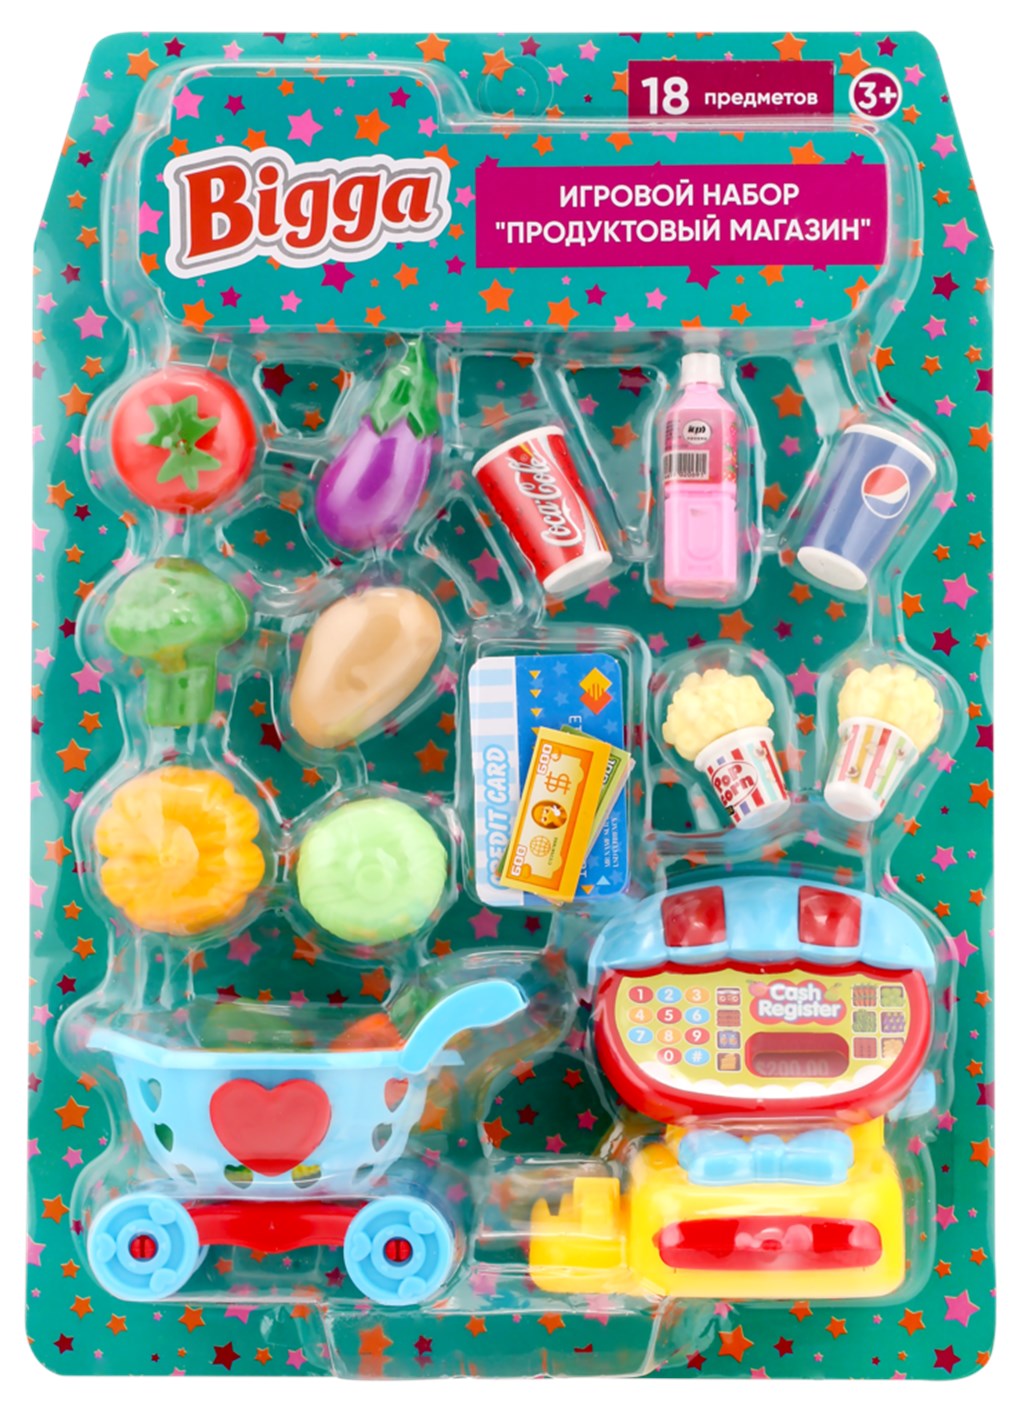 Игровой набор Продуктовый магазин Bigga 18 предметов